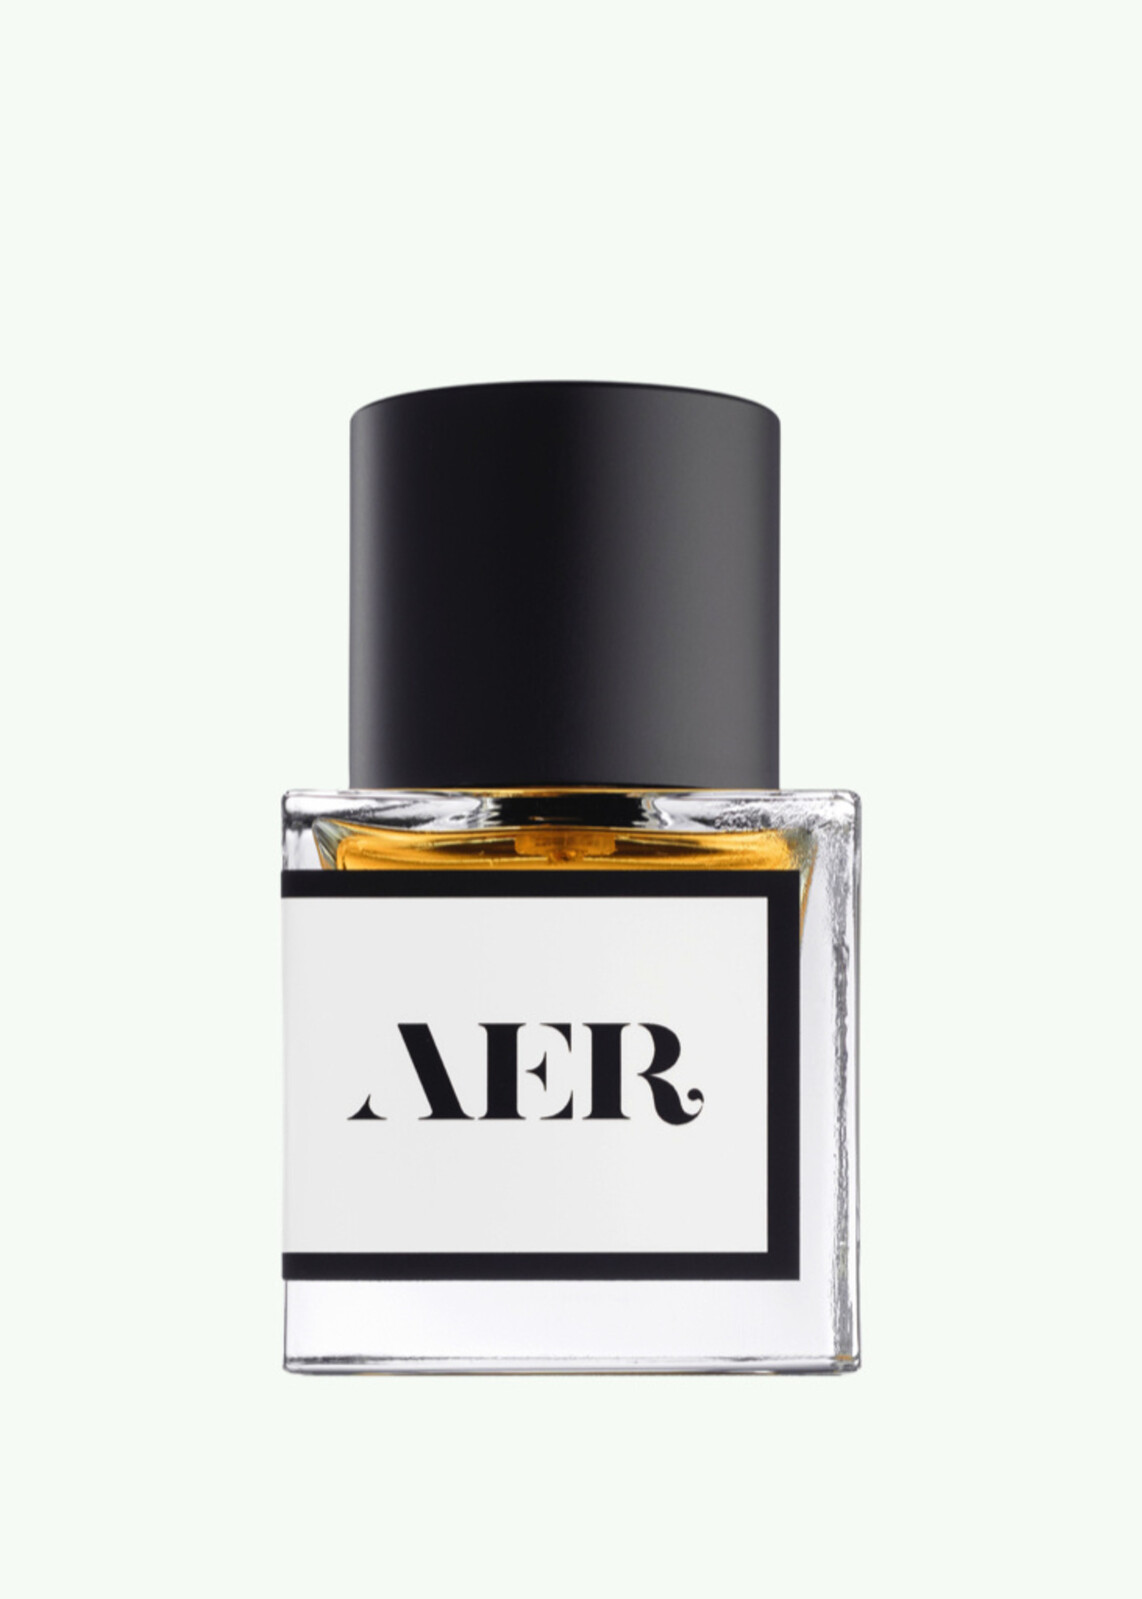 AER No.04  Cedar Parfum 30ml